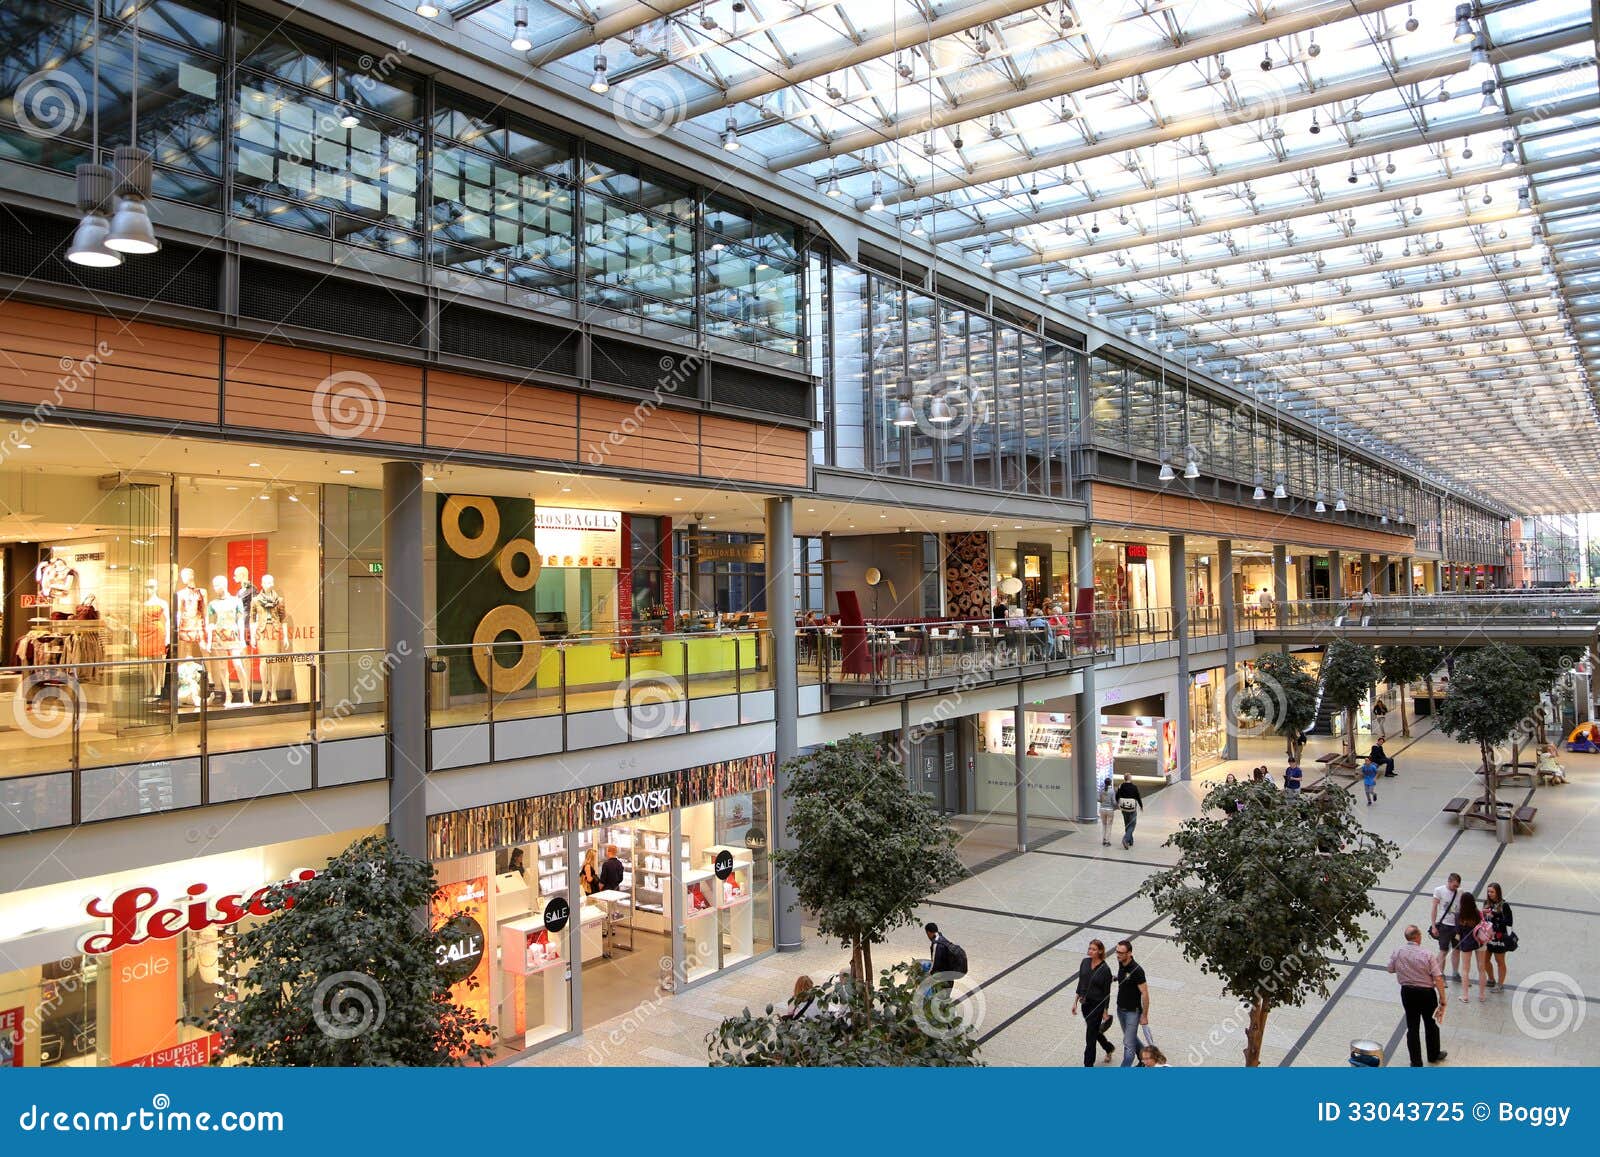 Potsdamer Platz Arkaden Shopping Mall In Berlin Editorial Image